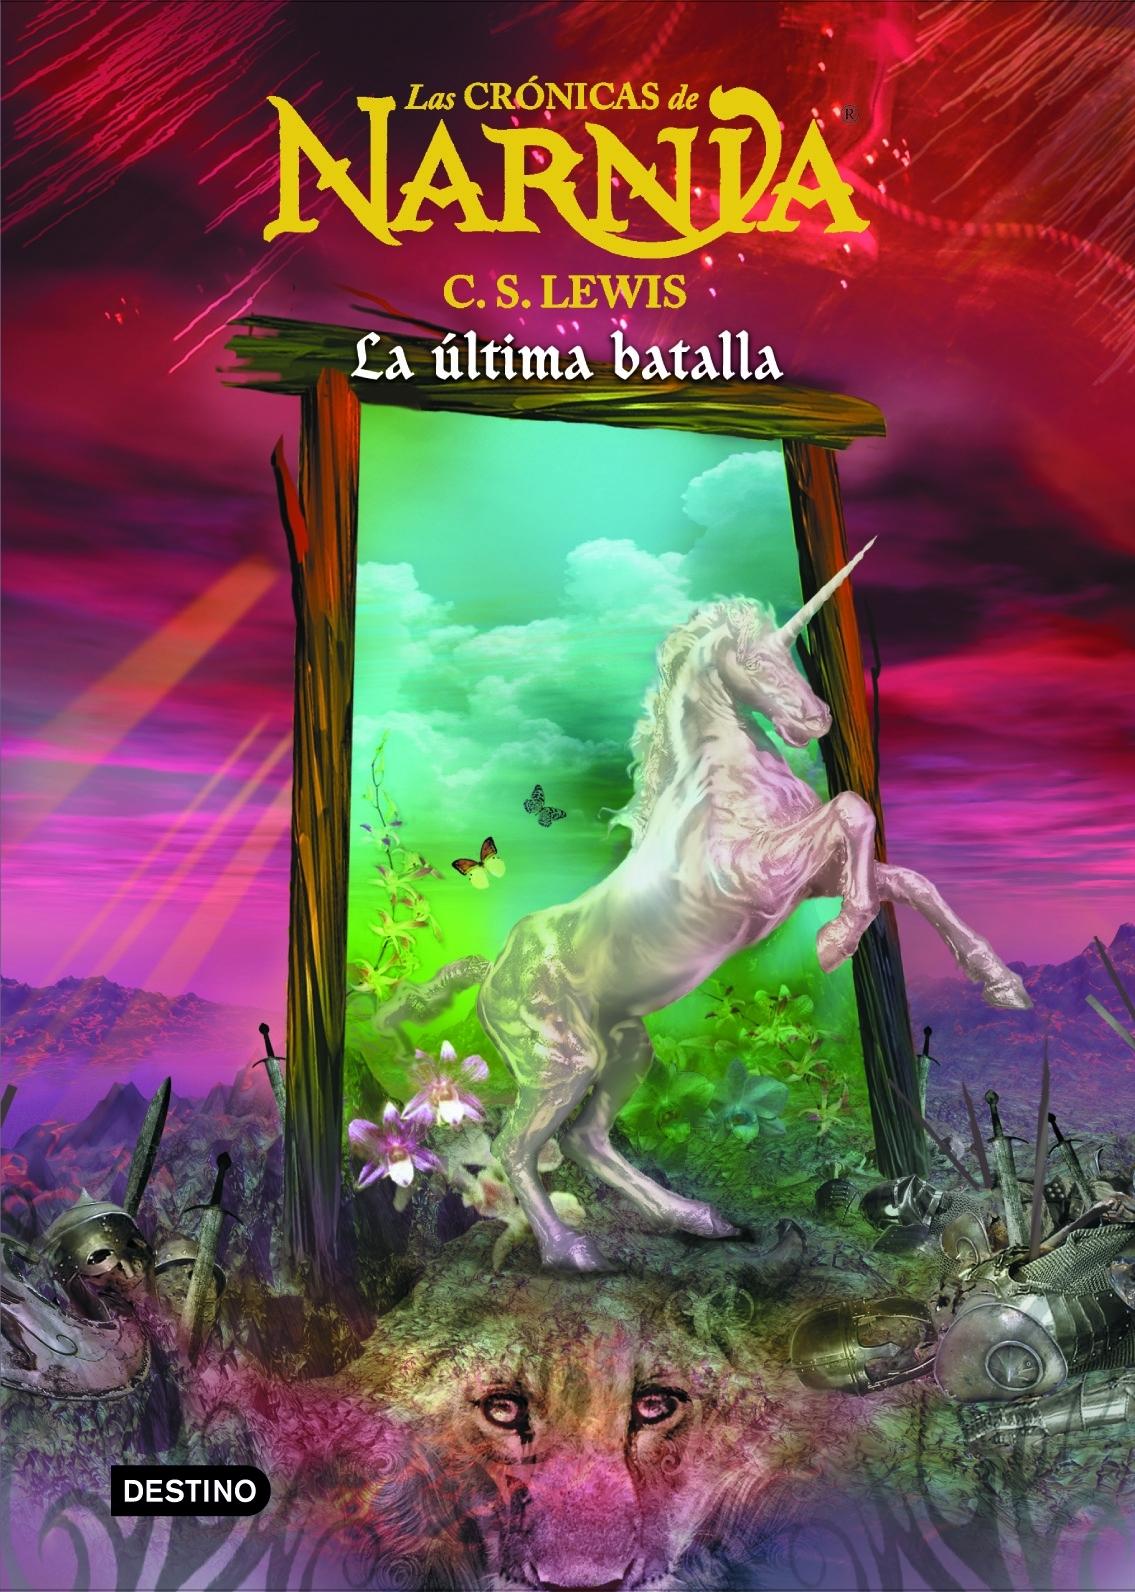 Las Crónicas de Narnia 7 "La última batalla". 